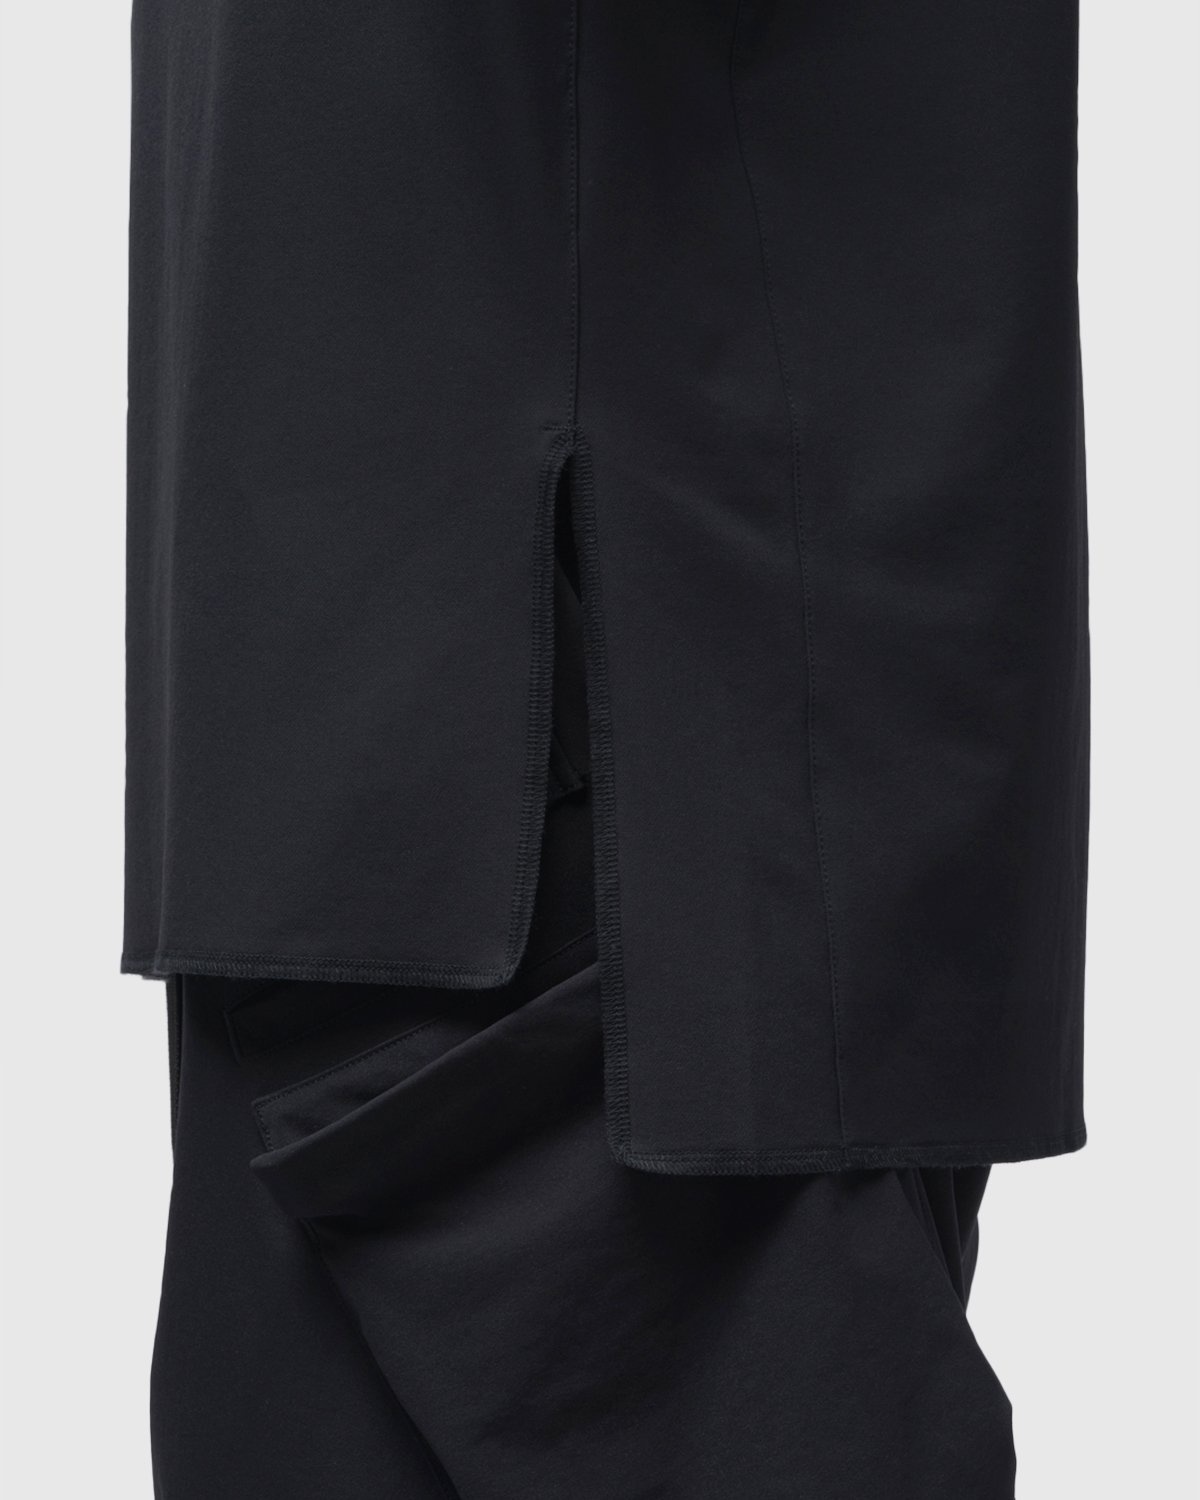 ACRONYM – S24-DS Short Sleeve Black - T-Shirts - Black - Image 9